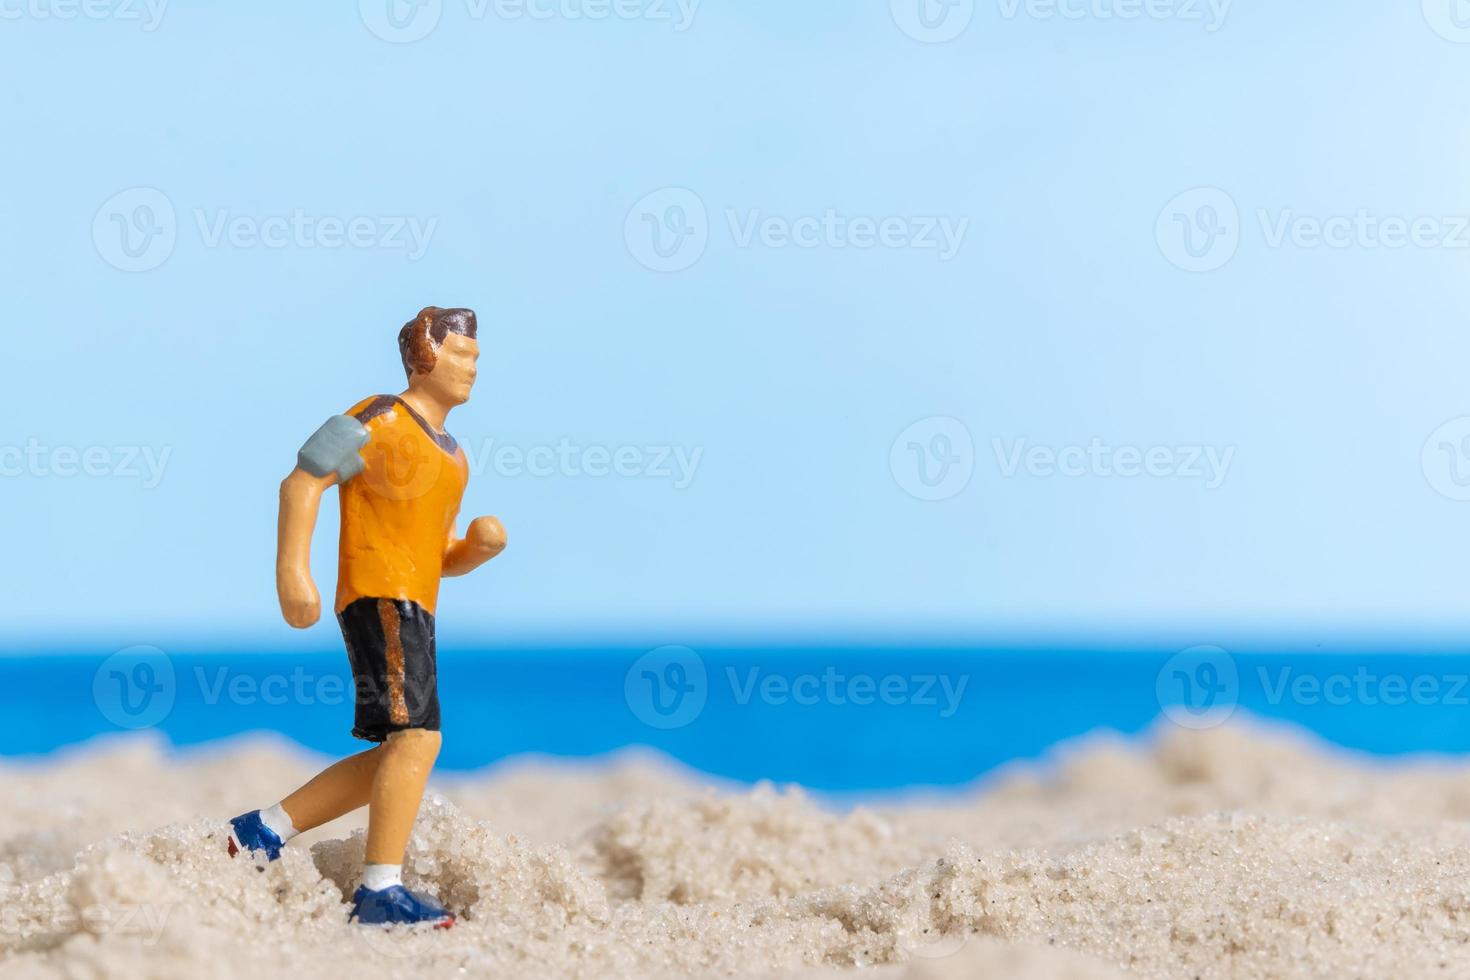 miniatyr människor springer på stranden foto